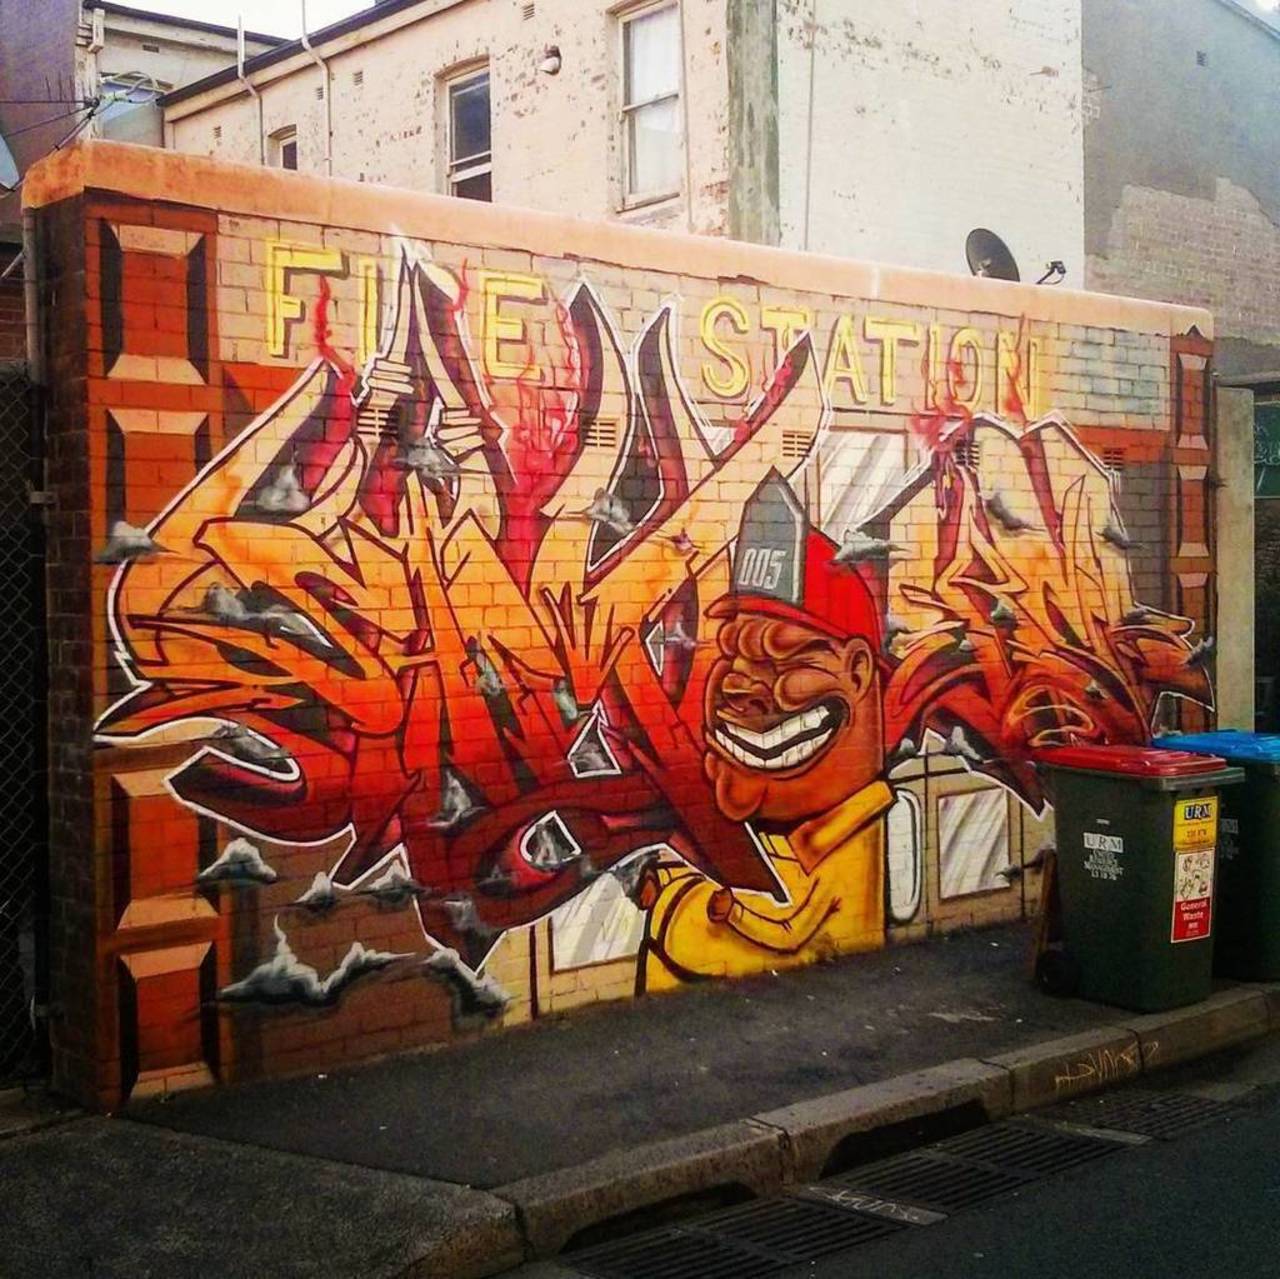 Fire Station #firestation #ifttt #newtown #sydney #sydneygraffiti #rsa_graffiti #arteurbano #streetart #graffiti #g… https://t.co/H3QDJQRRju